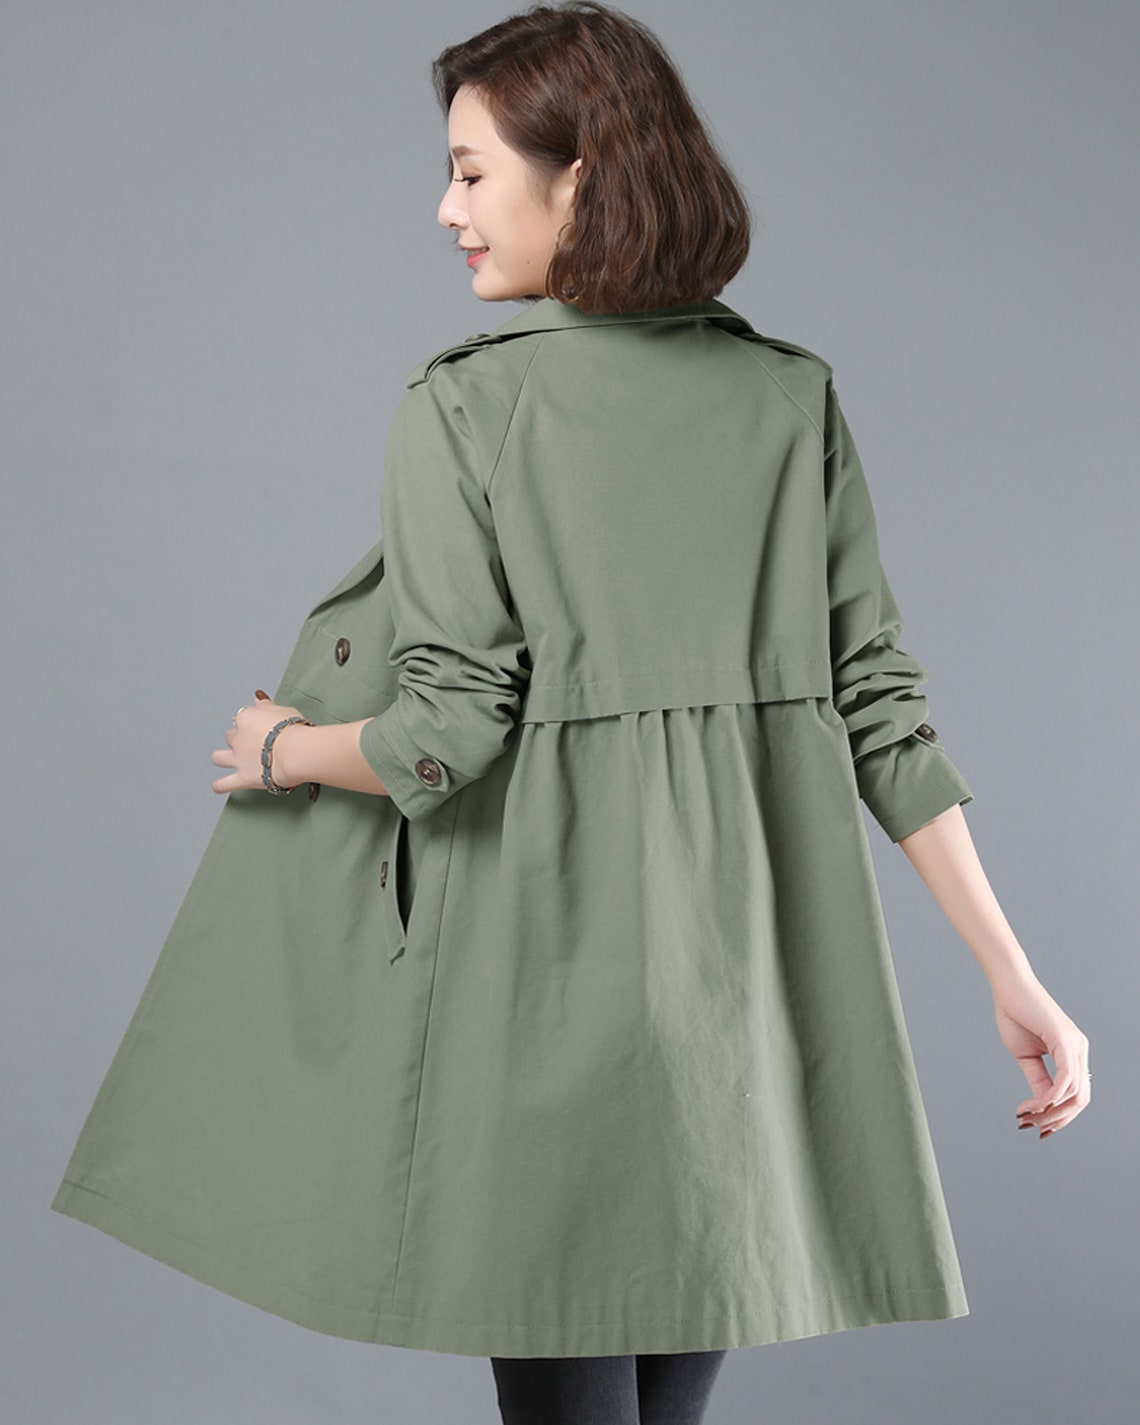 Green jacketcotton jacket women winter coat Maxi | Etsy